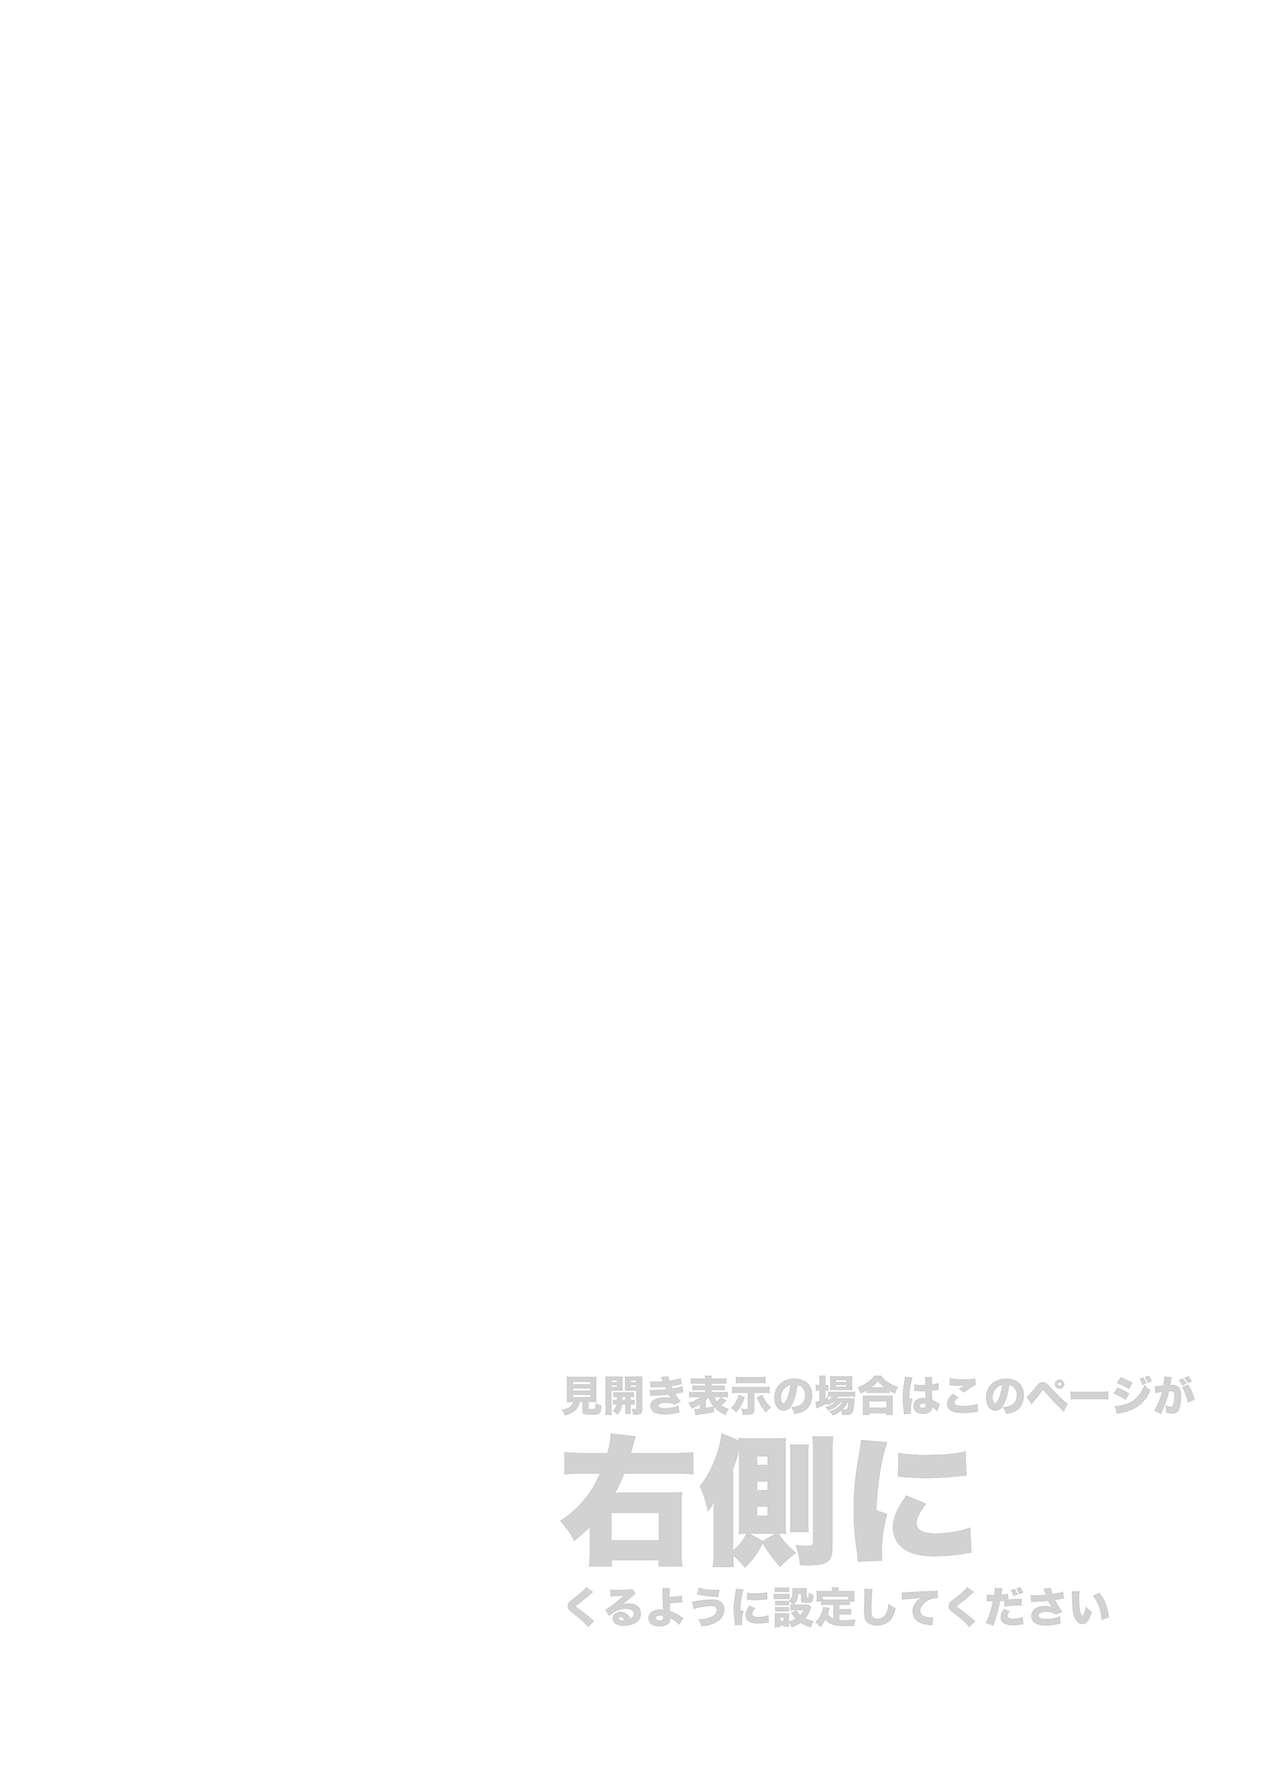 Voyeursex Kore wa Kintore Nanda Honto dayo Shinjite - Mobile suit gundam tekketsu no orphans Pasivo - Page 2